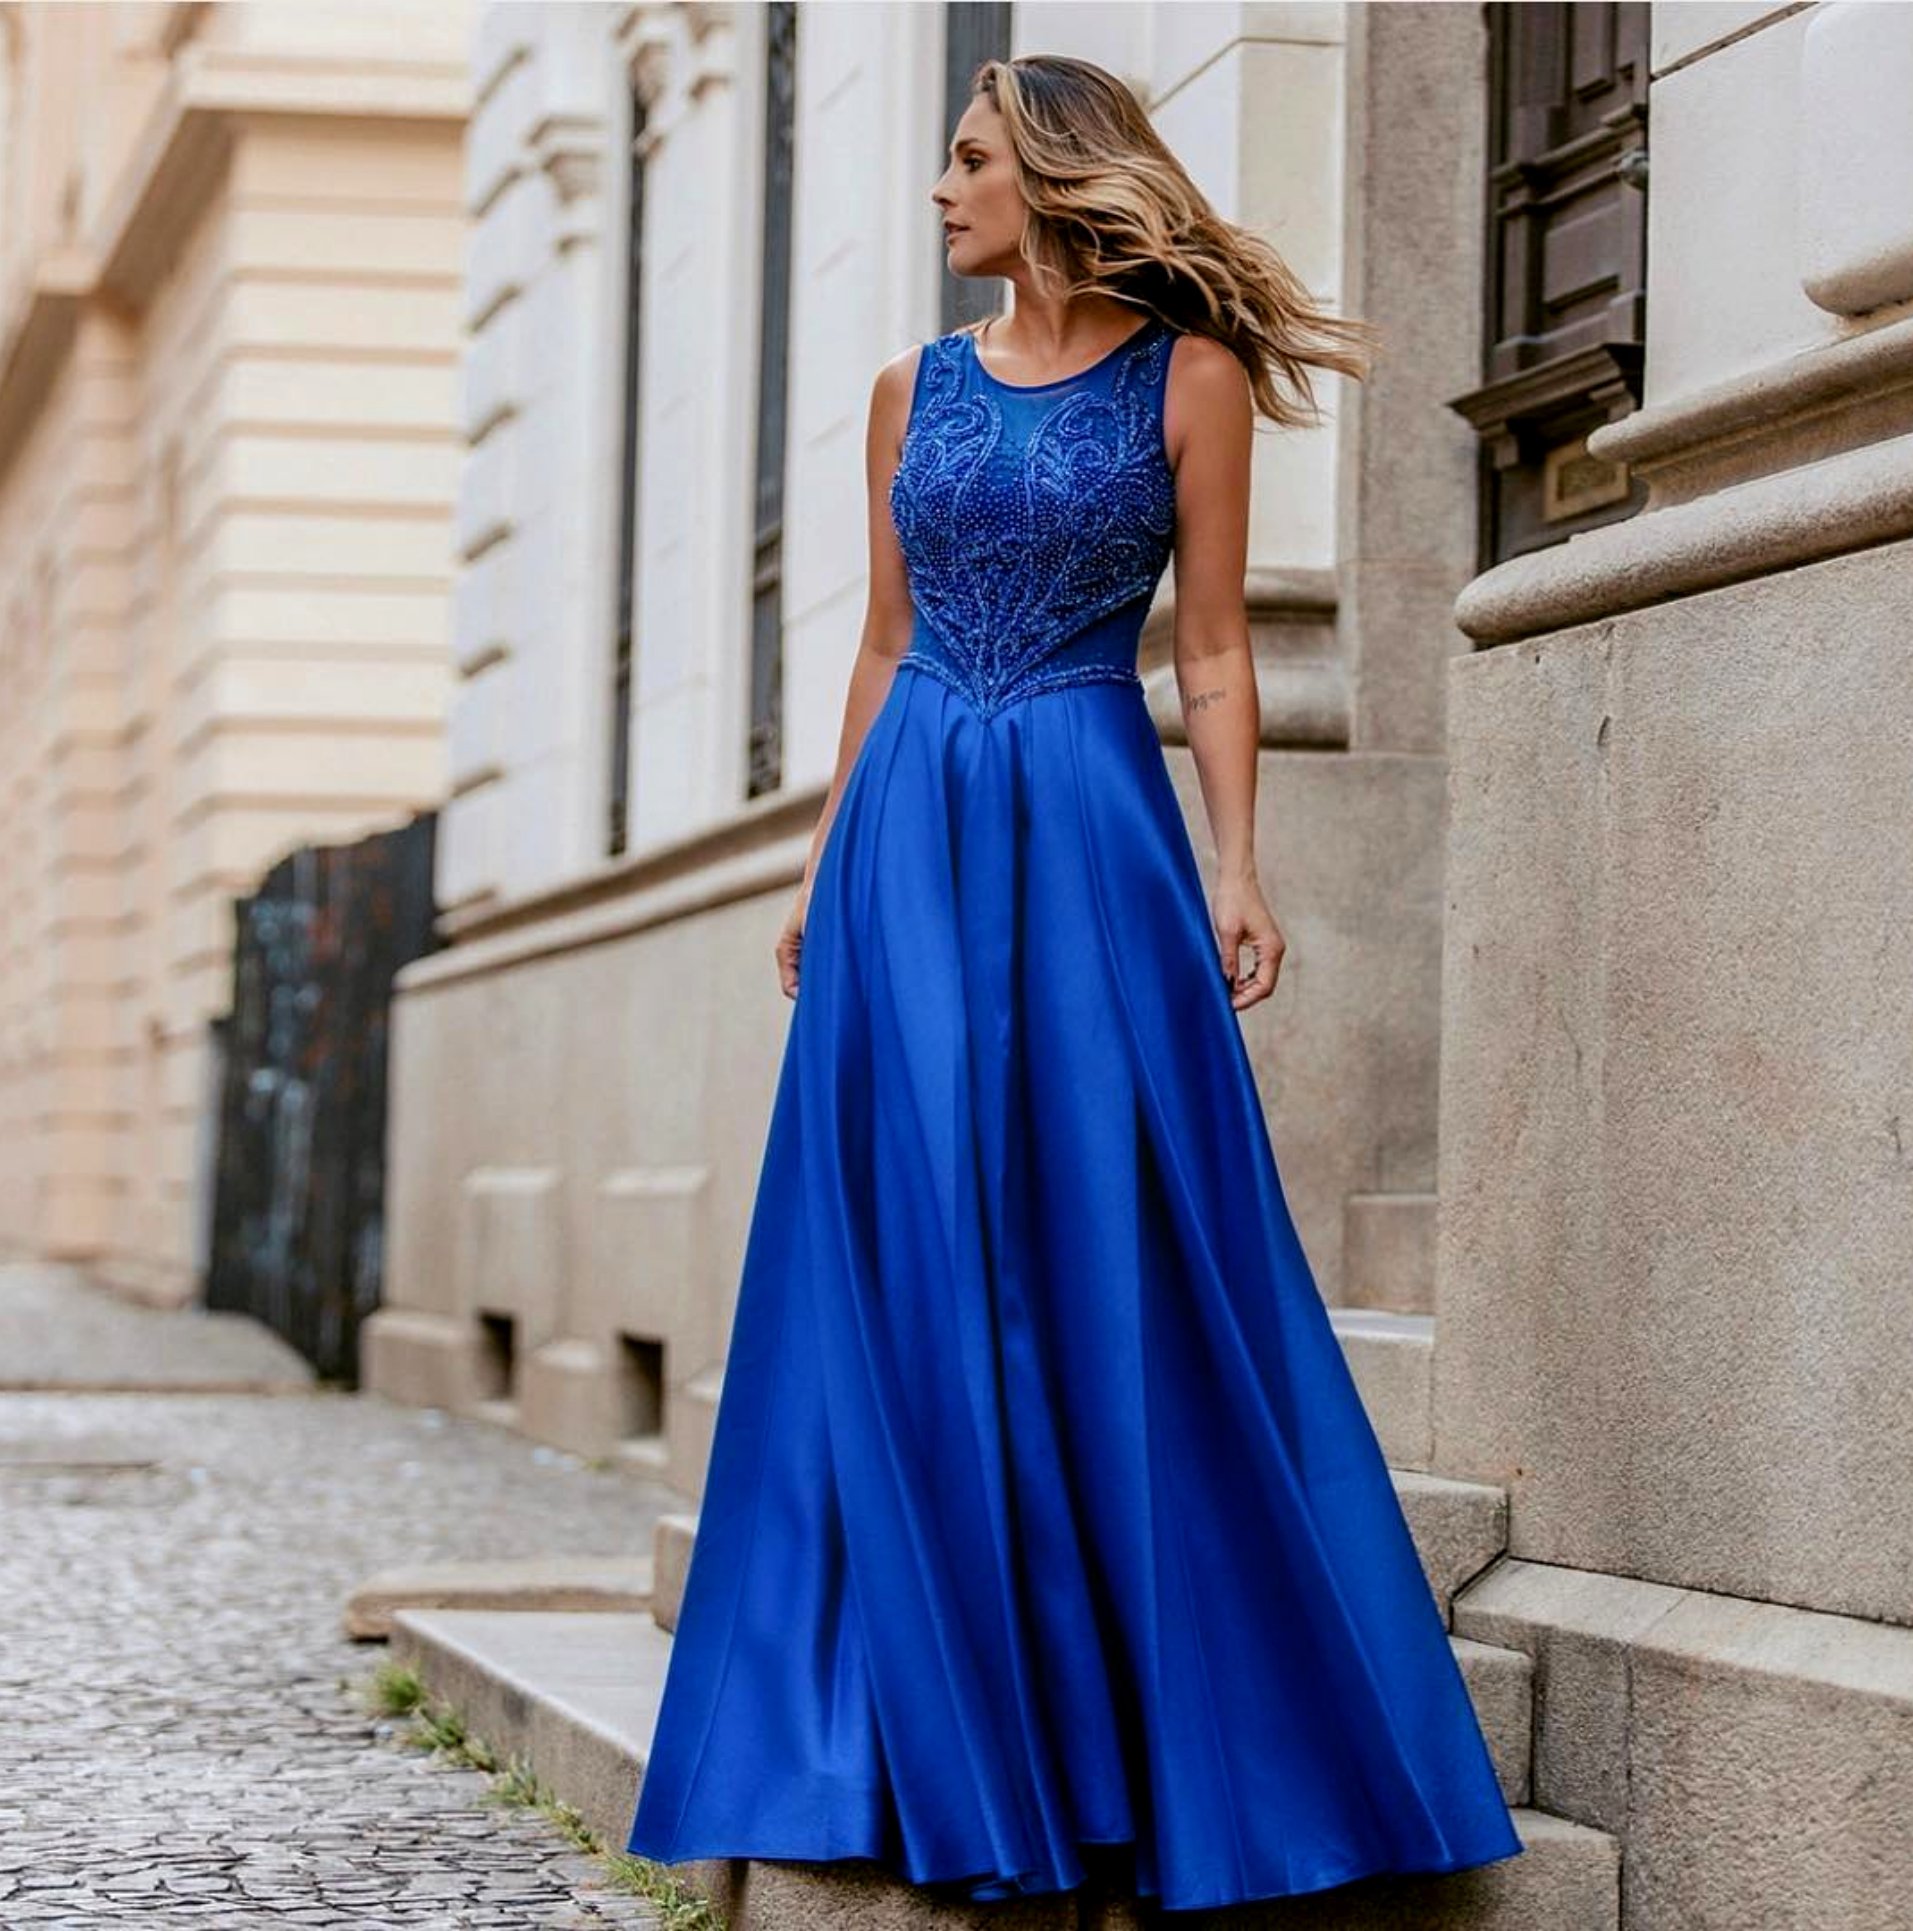 Bonitos y elegantes vestidos azul royal para tu graduación